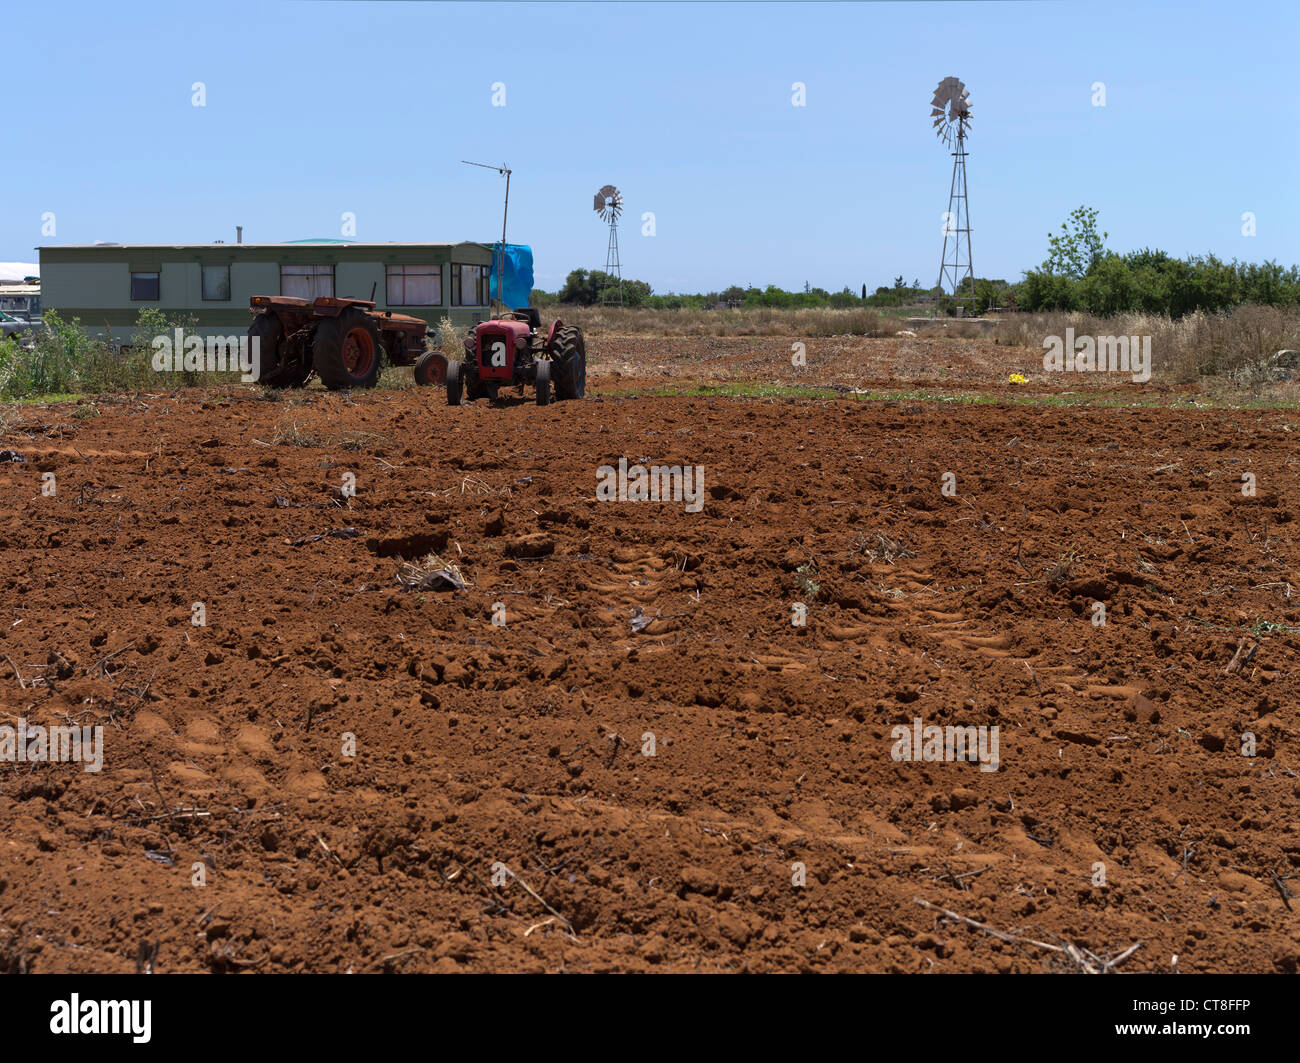 Dh Ayia Napa CHYPRE ZONE ROUGE Ferme champ sol tracteurs agricoles du sud de la pompe à eau moulin caravane Banque D'Images